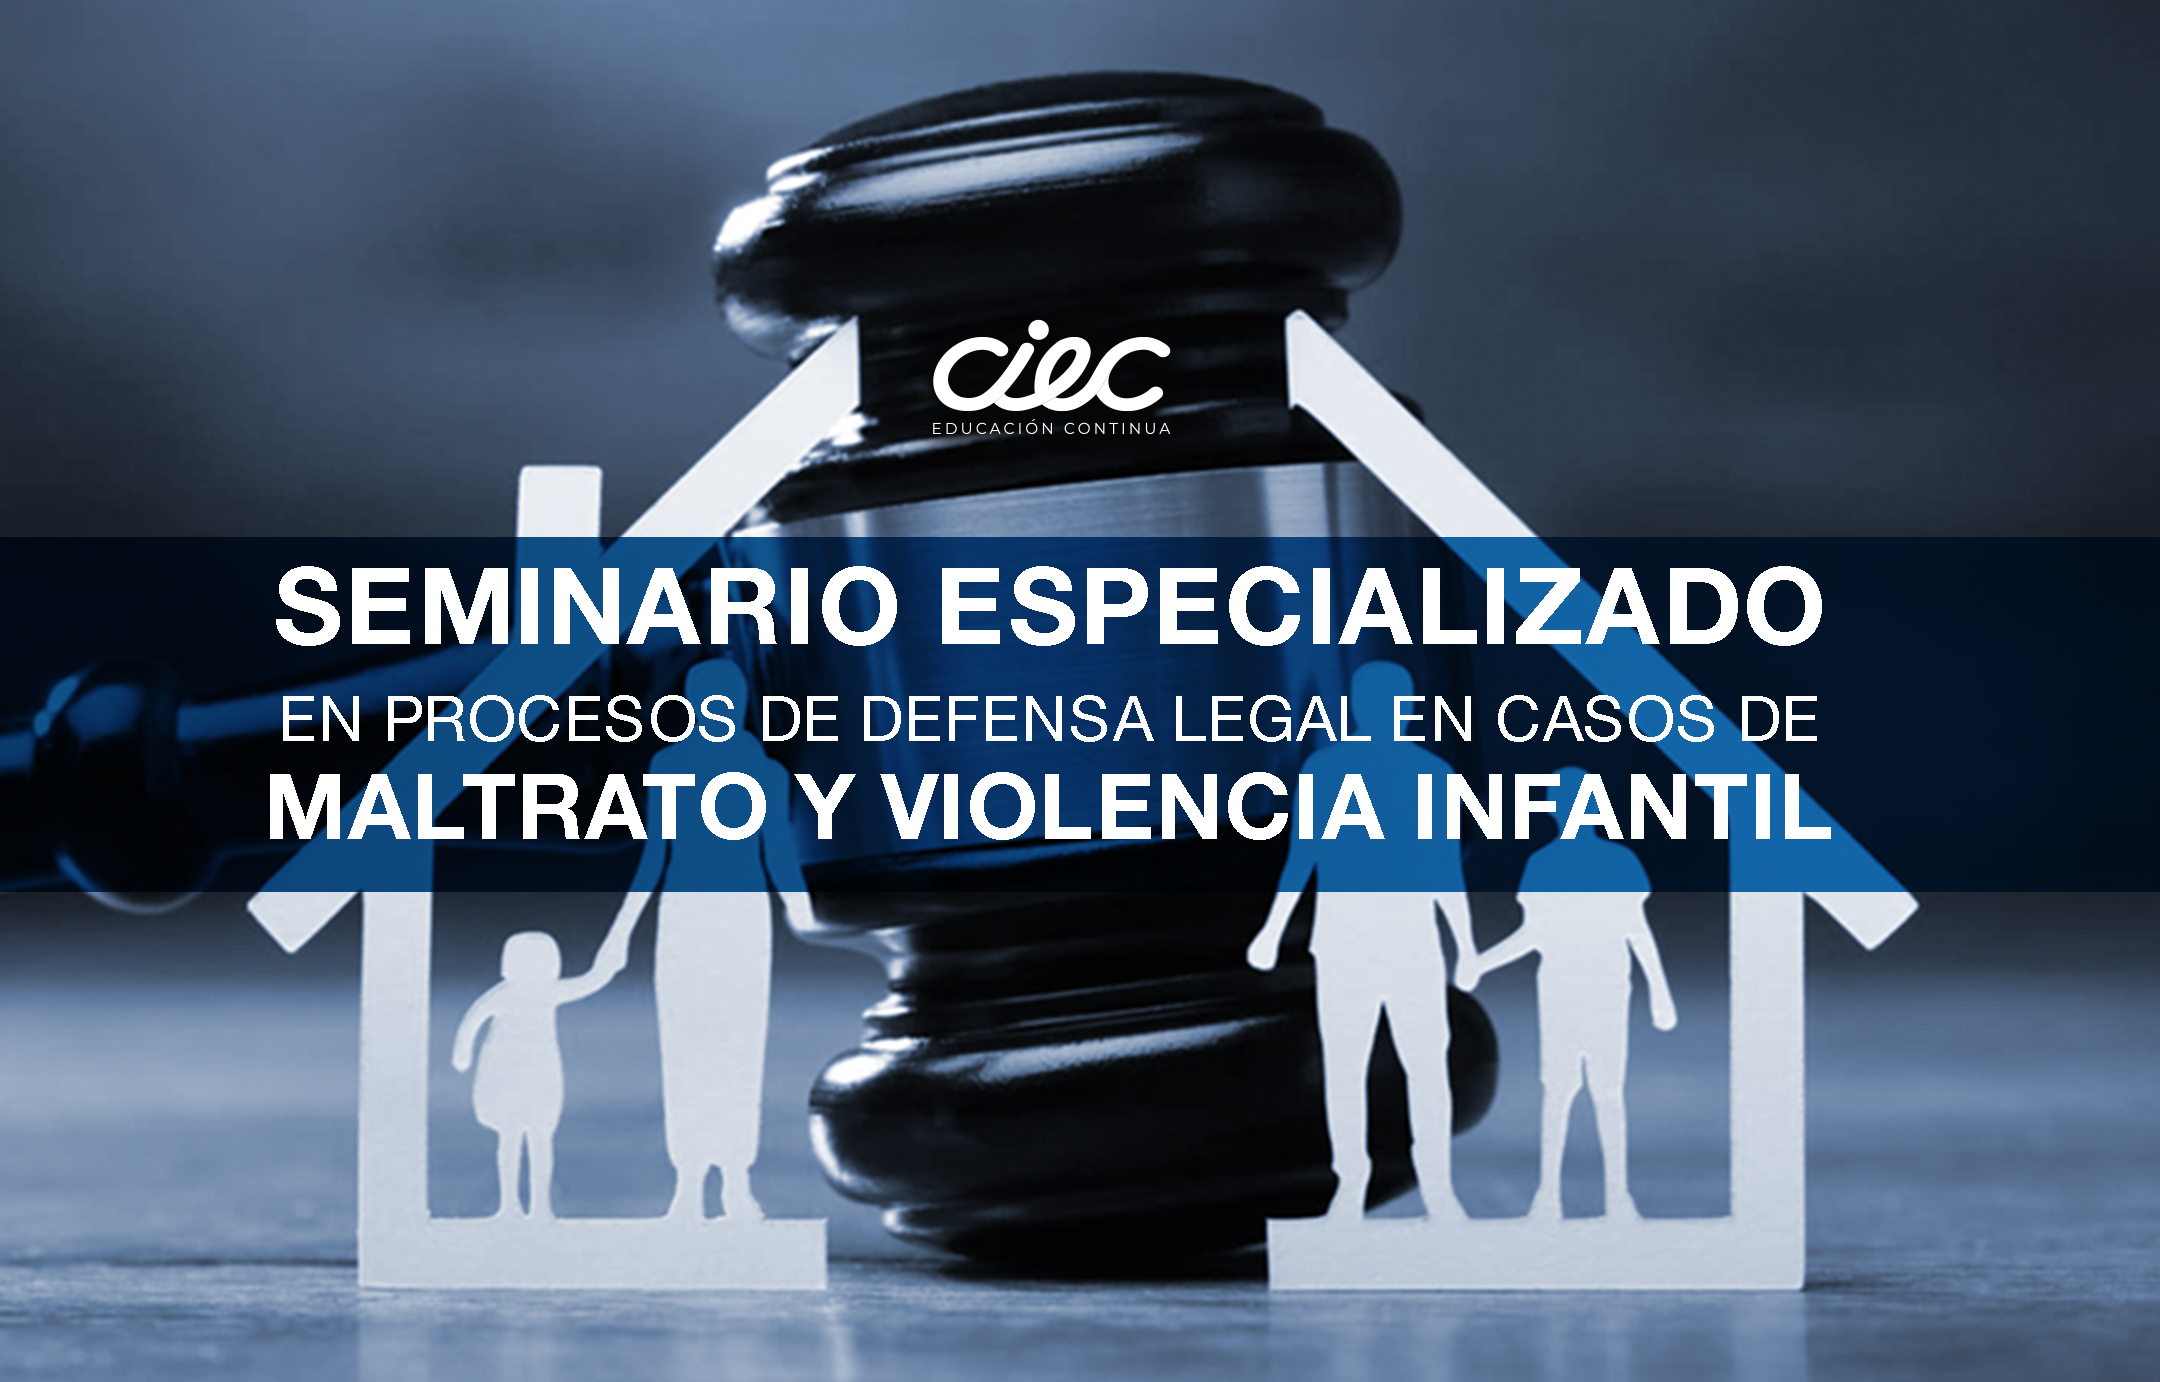 "SEMINARIO ESPECIALIZADO EN PROCESOS DE DEFENSA LEGAL EN CASOS DE MALTRATO Y VIOLENCIA INFANTIL"